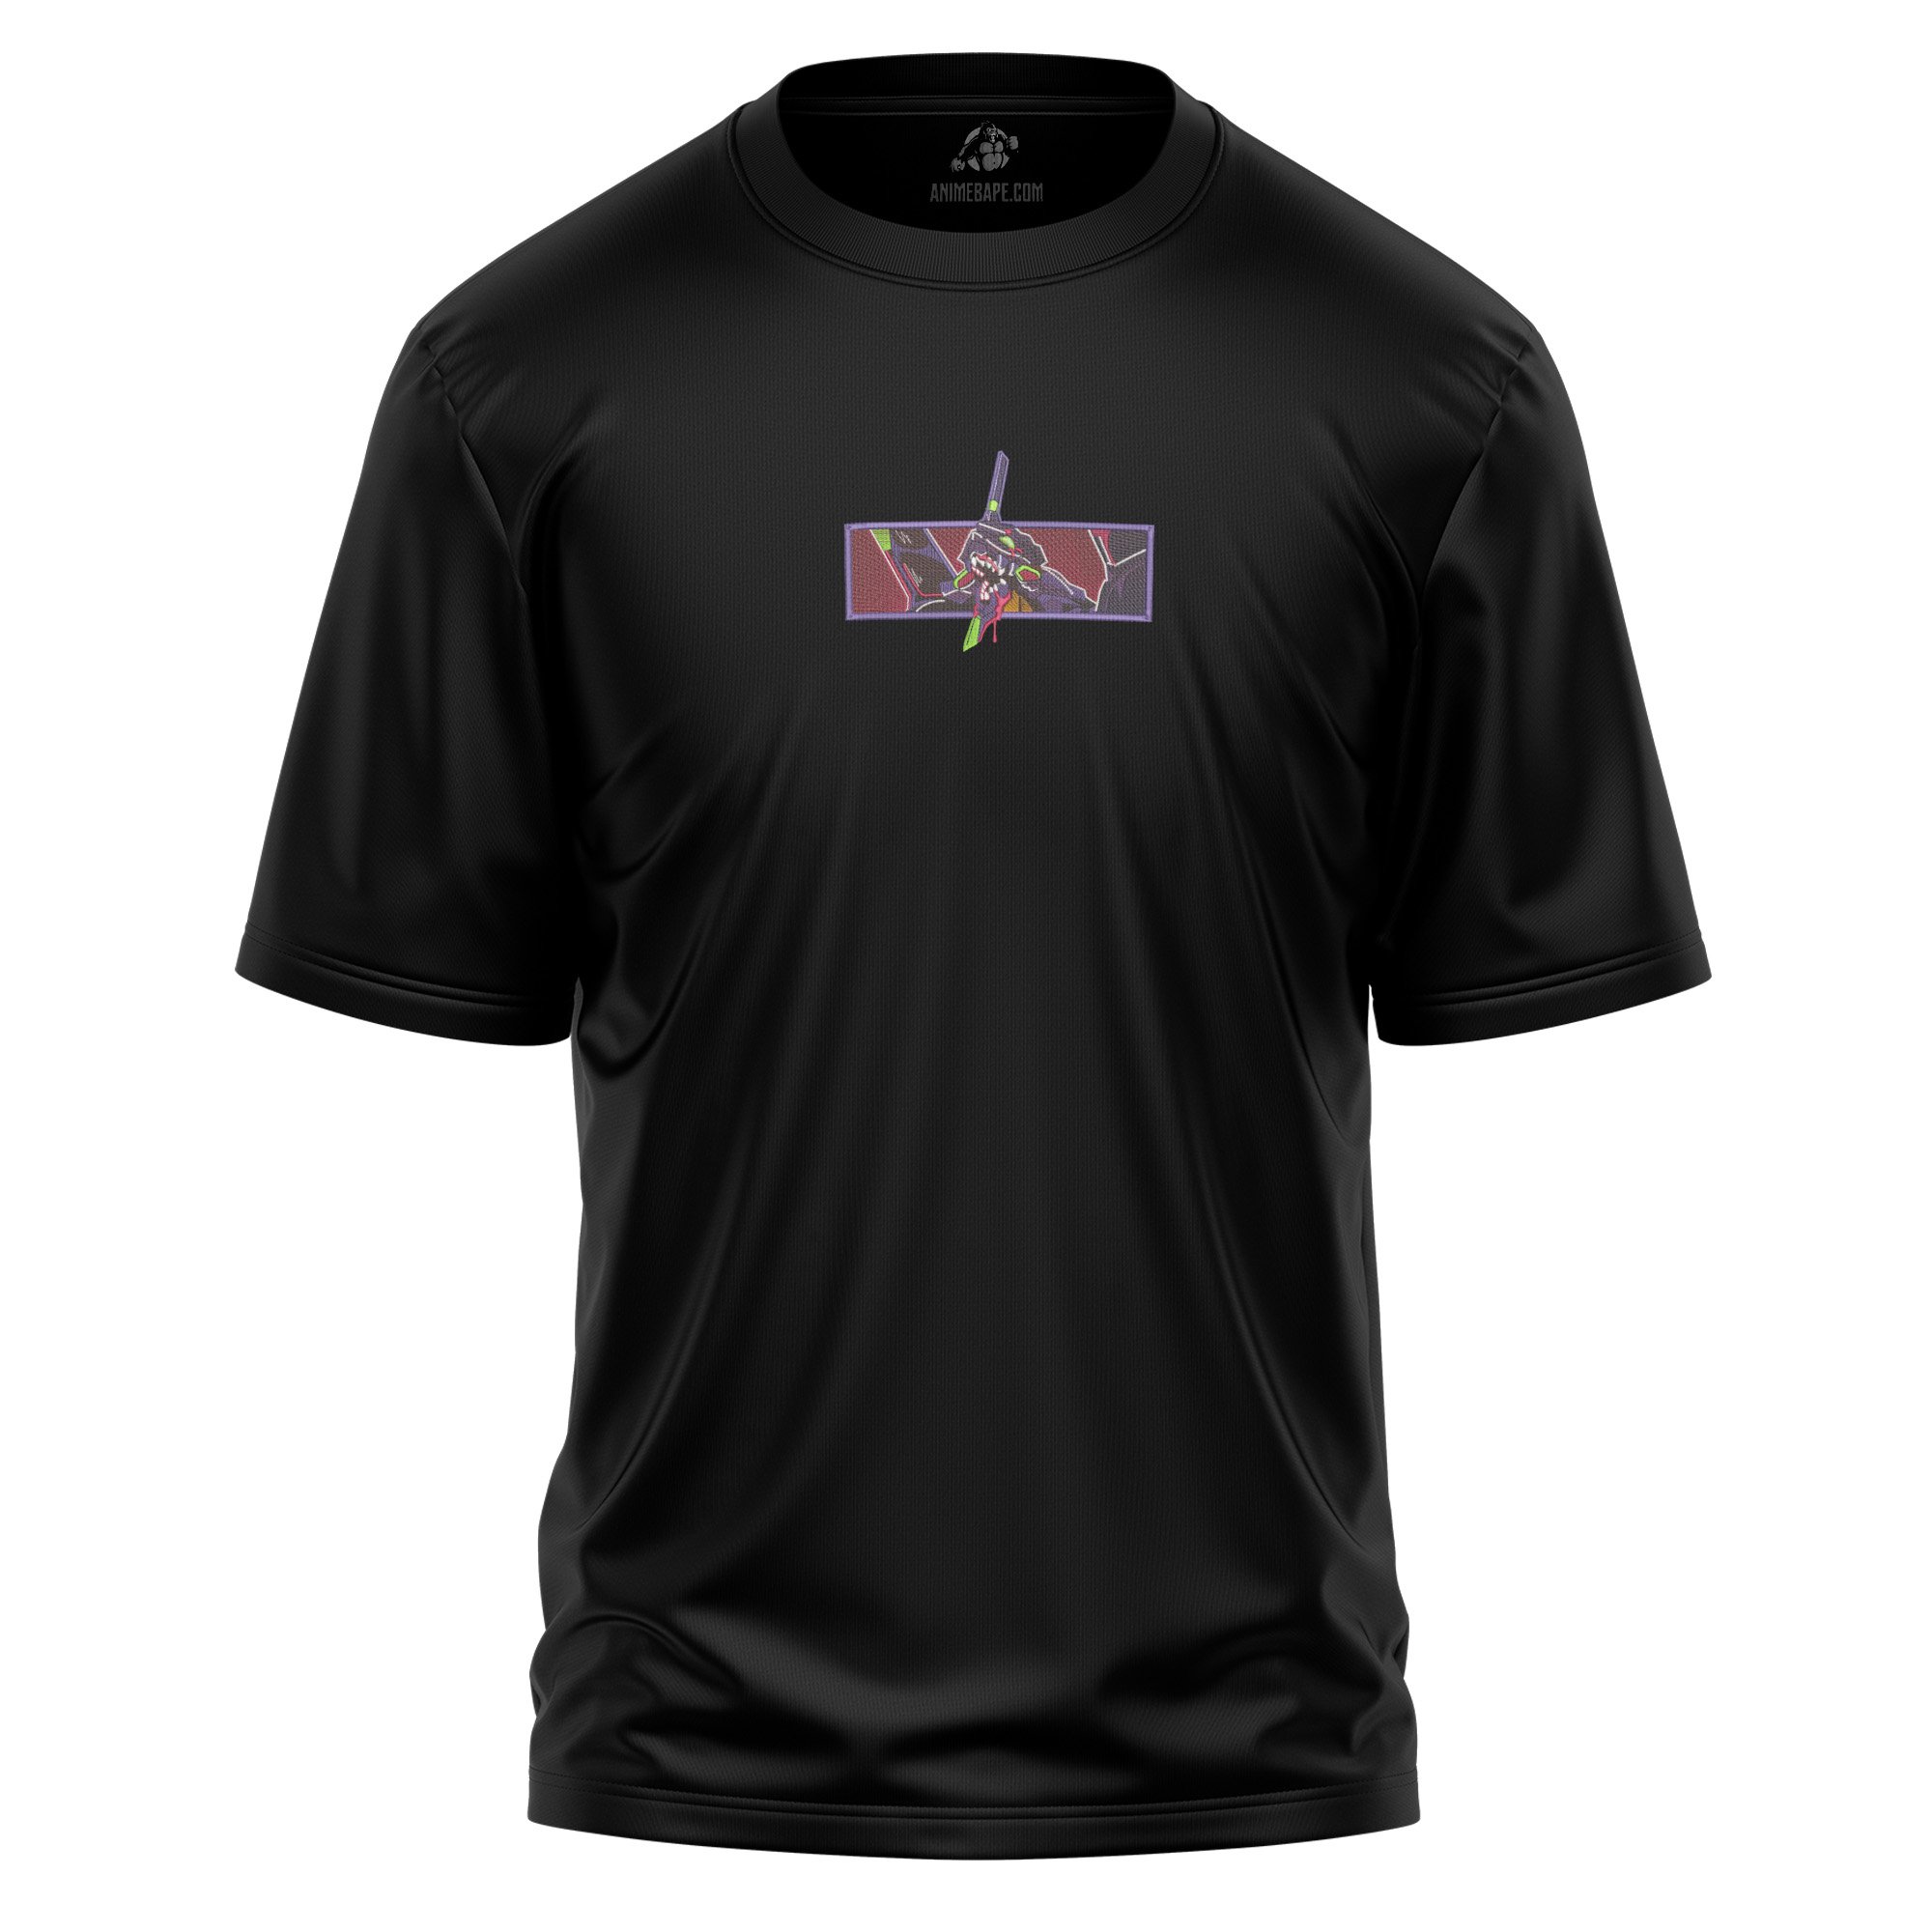 Evangelion Unit 01 V2 Neon Genesis Evangelion Embroidered T Shirt